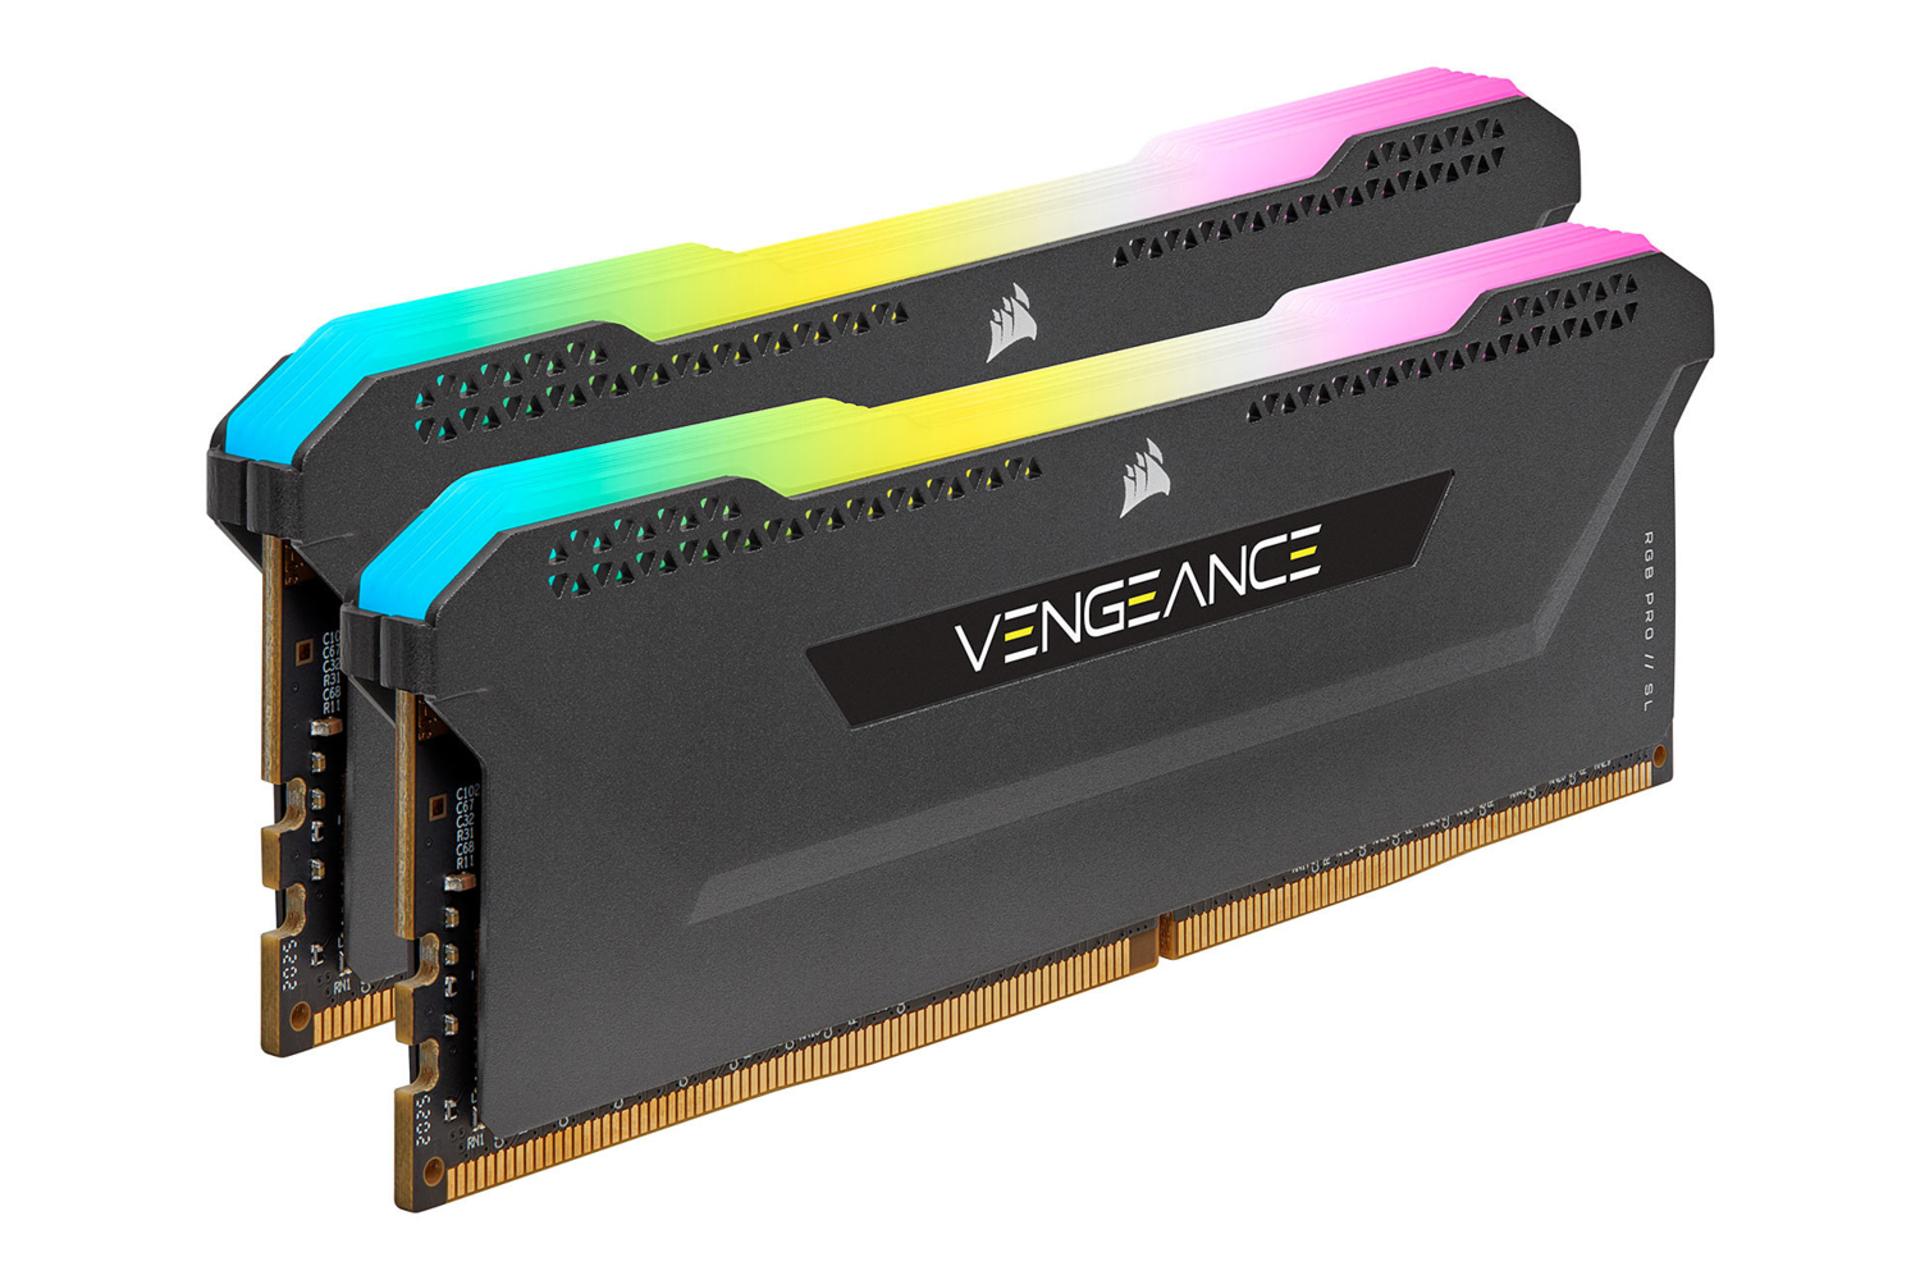 حافظه رم کورسیر VENGEANCE RGB PRO SL ظرفیت 64 گیگابایت (2x32) از نوع DDR4-3200 نمای جانبی